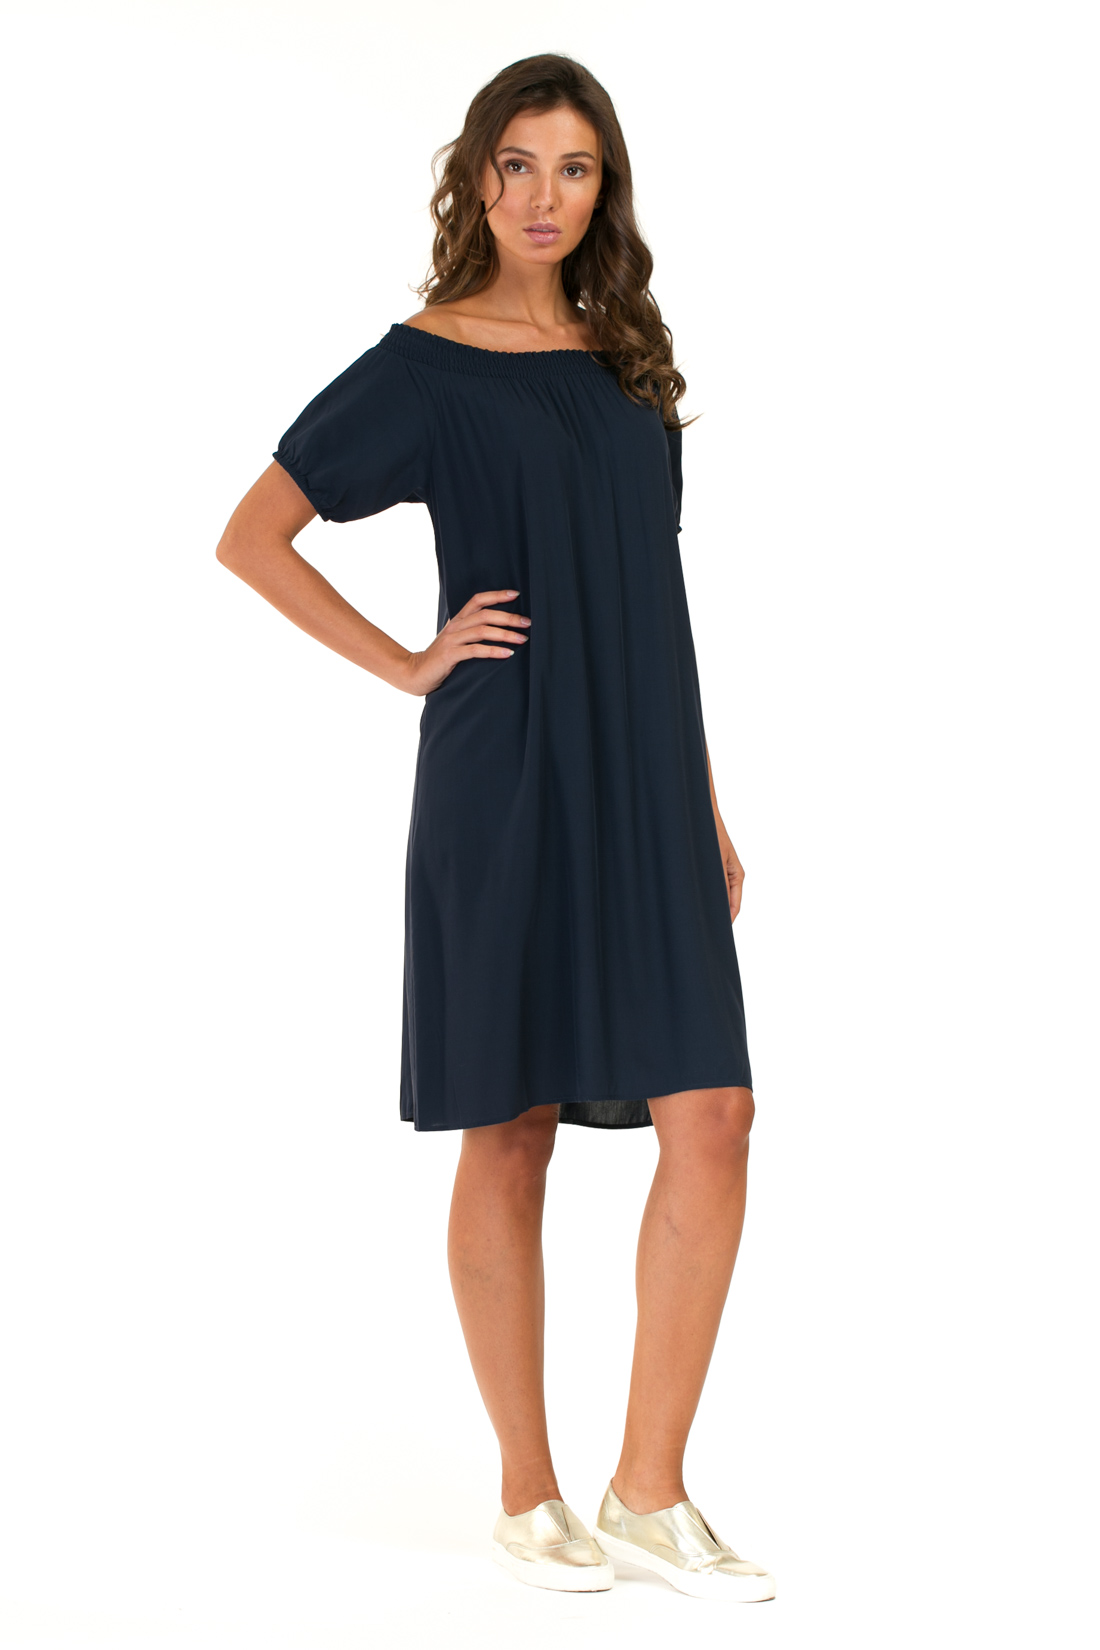 Платье с эластичным верхом (арт. baon B457054), размер L, цвет синий Платье с эластичным верхом (арт. baon B457054) - фото 5